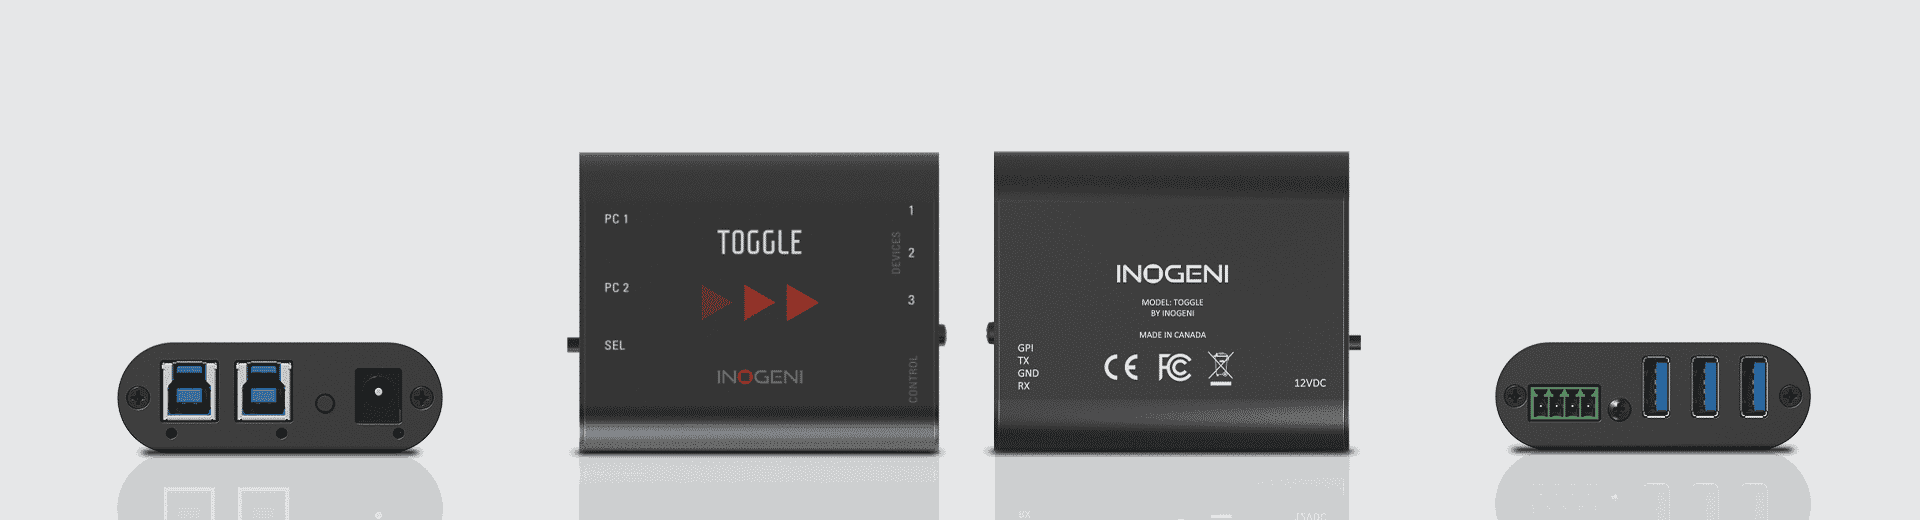 Bộ chuyển đổi USB 3.0 TOGGLE của INOGENI giải quyết vấn đề gì?